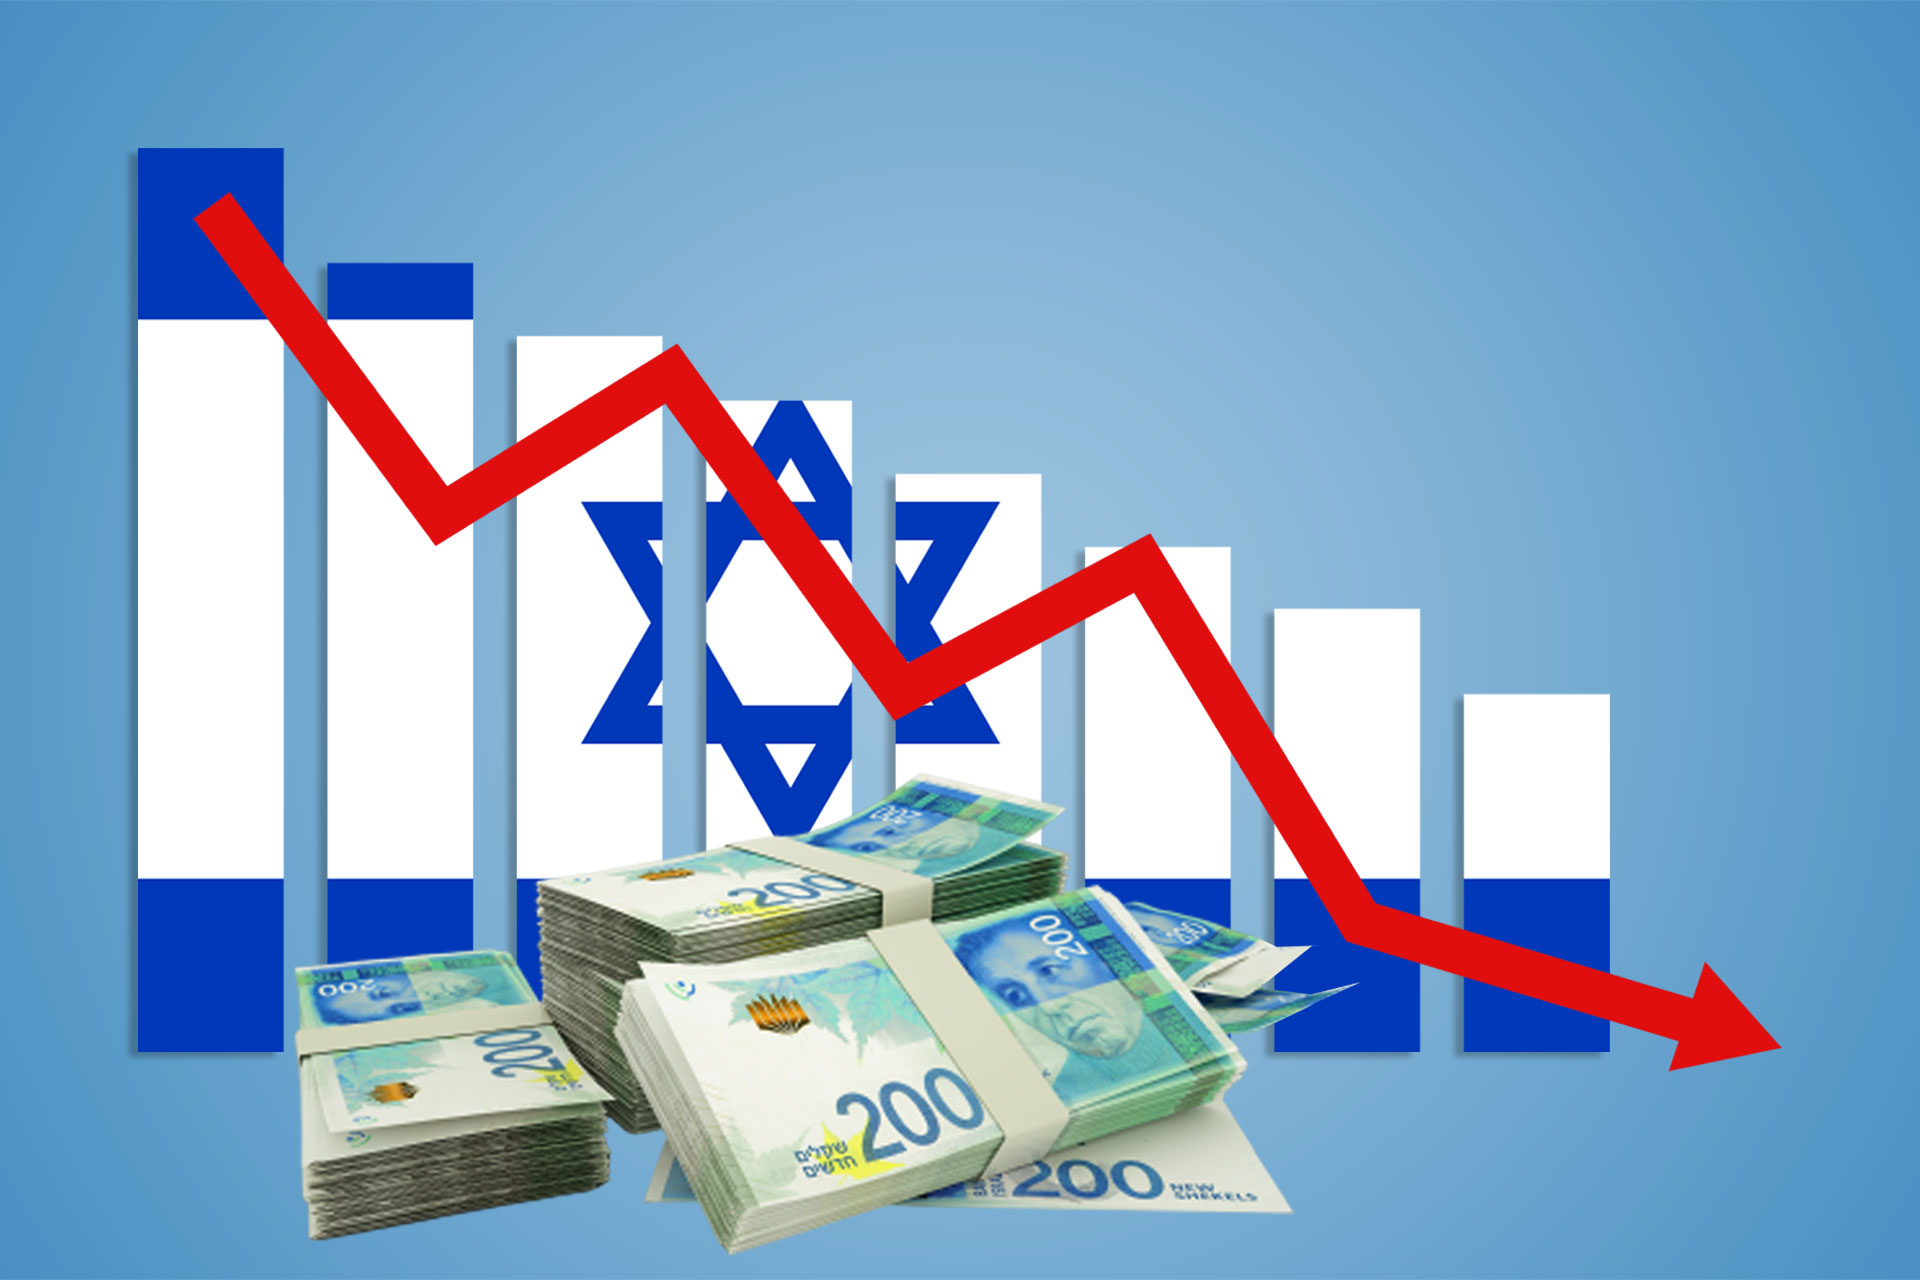 إسرائيل تبحث إقرار موازنة بـ8 مليارات دولار لتمويل حربها على غزة | اقتصاد – البوكس نيوز